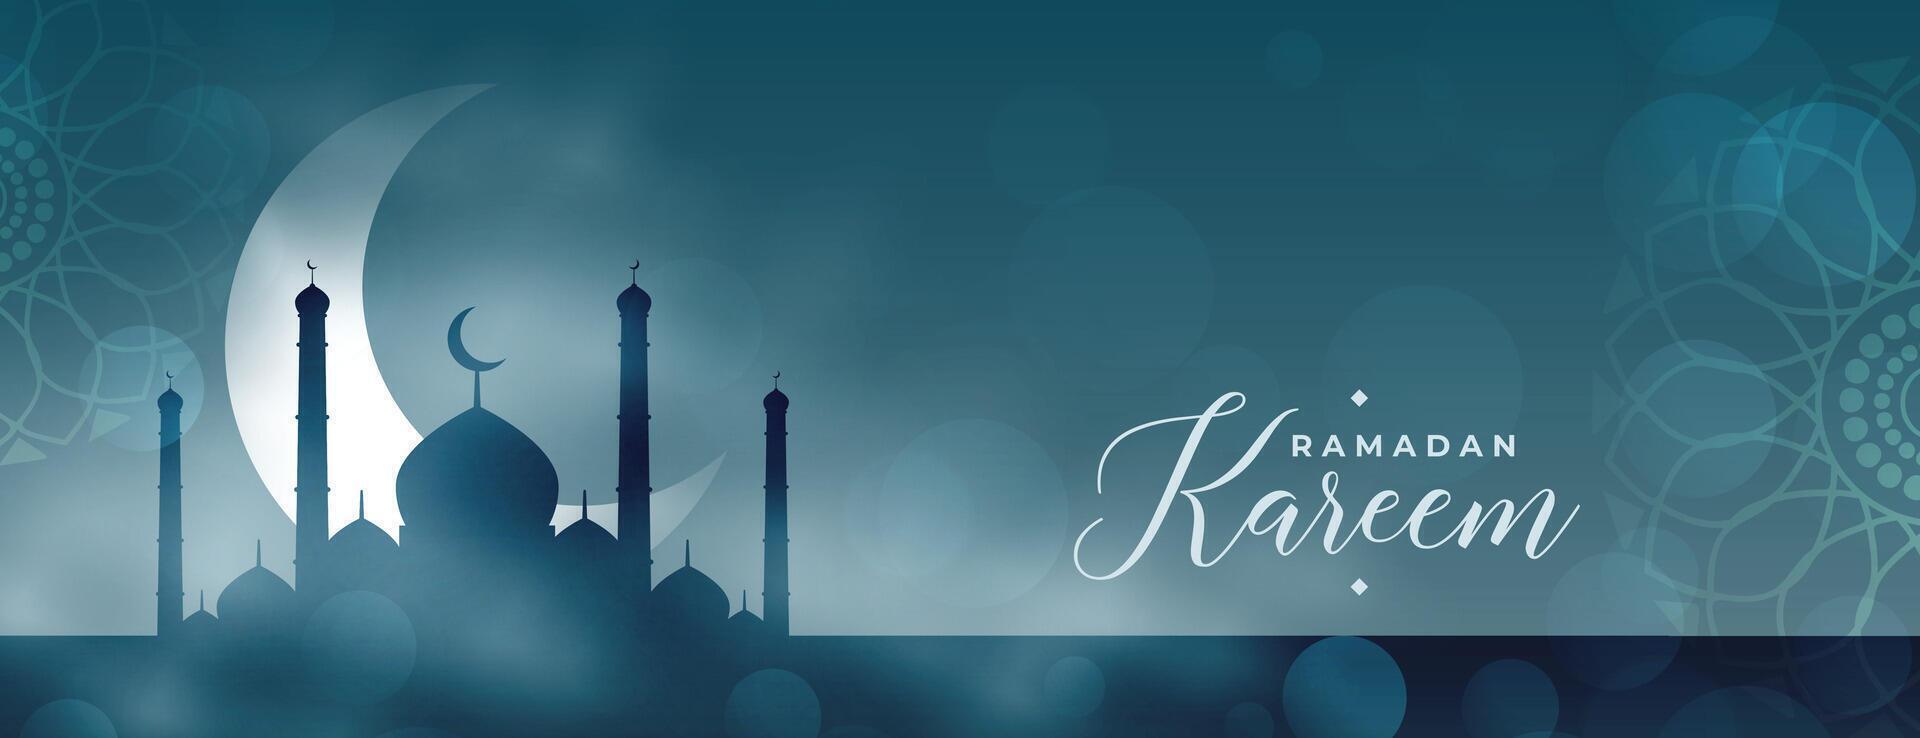 nett Ramadan kareem eid Banner mit Moschee und Mond vektor